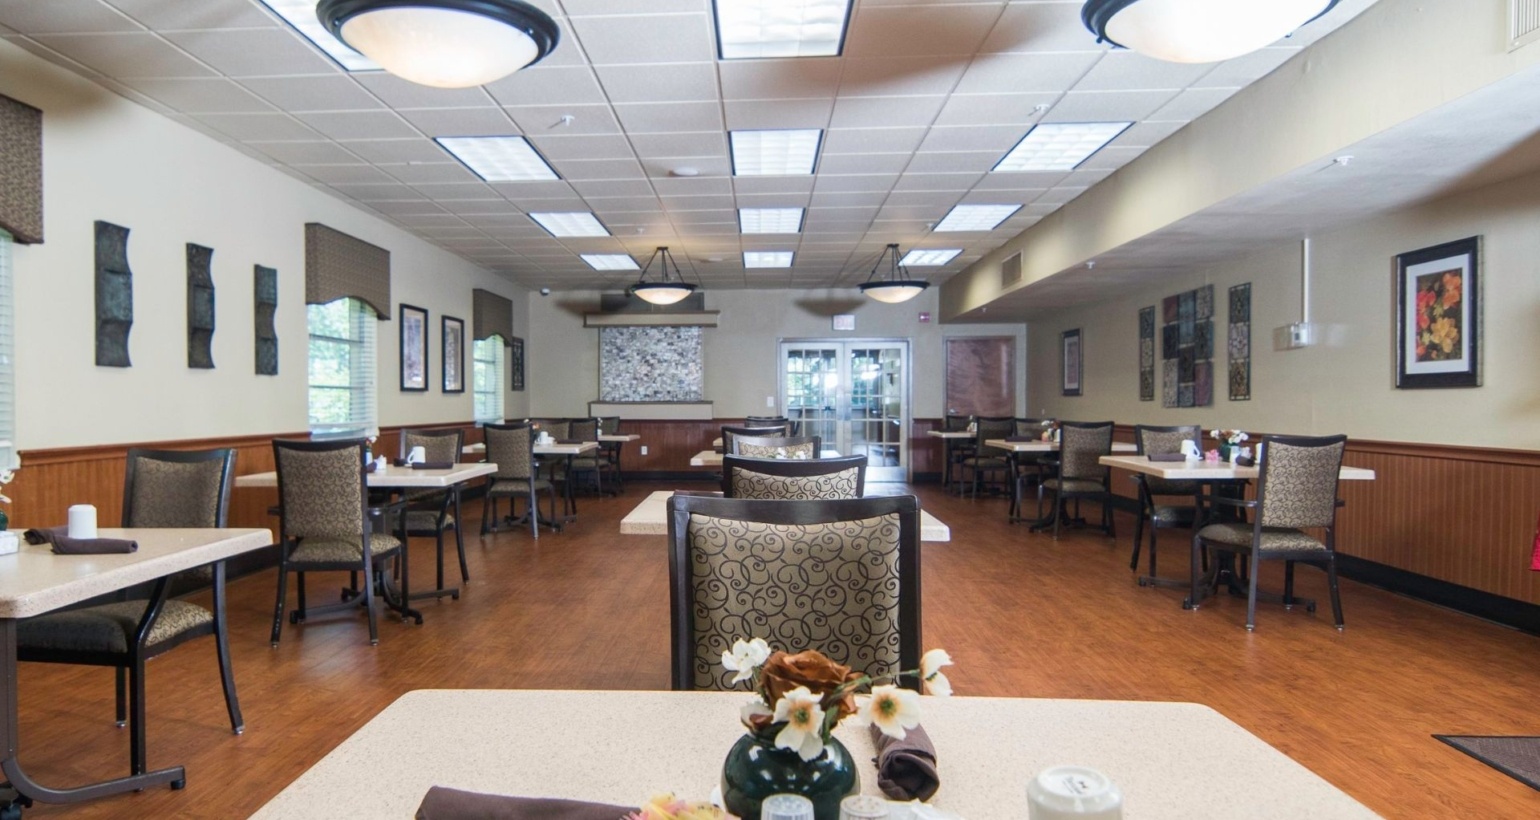 Dining area in Brooksville Healthcare Center